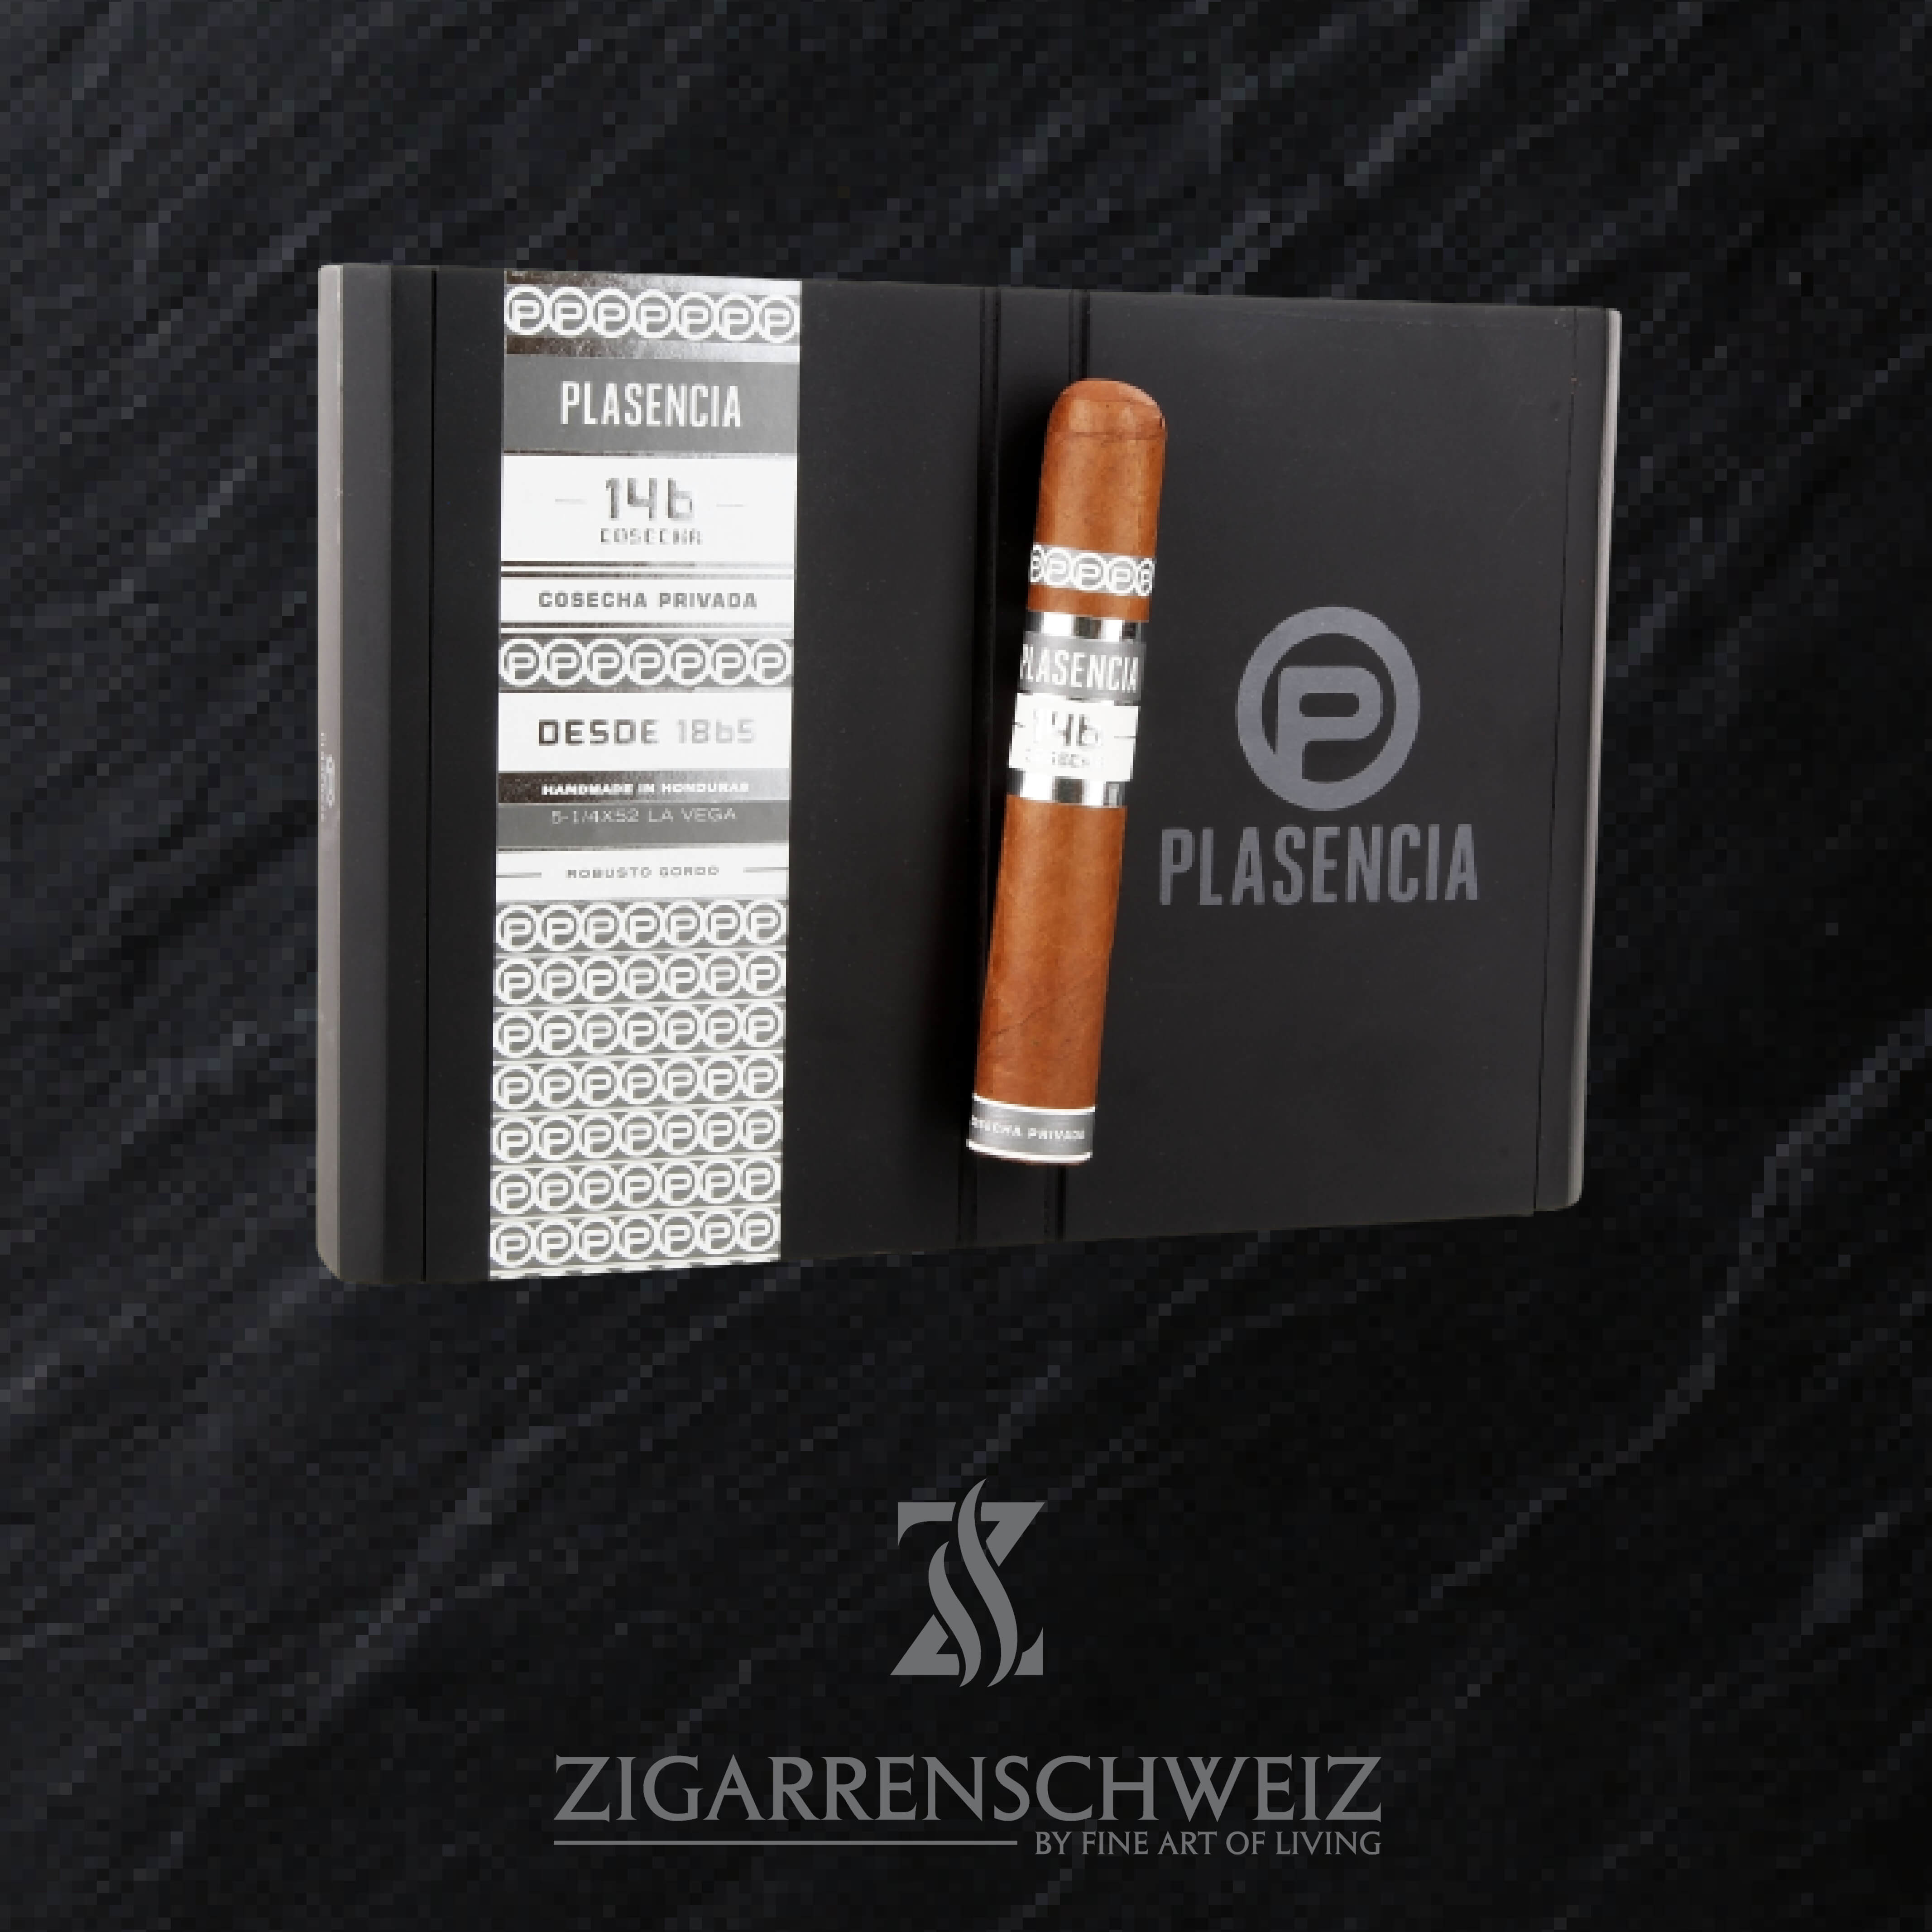 geschlossene Kiste Plasencia Cosecha 146 La Vega Zigarren im Robusto Gordo Format